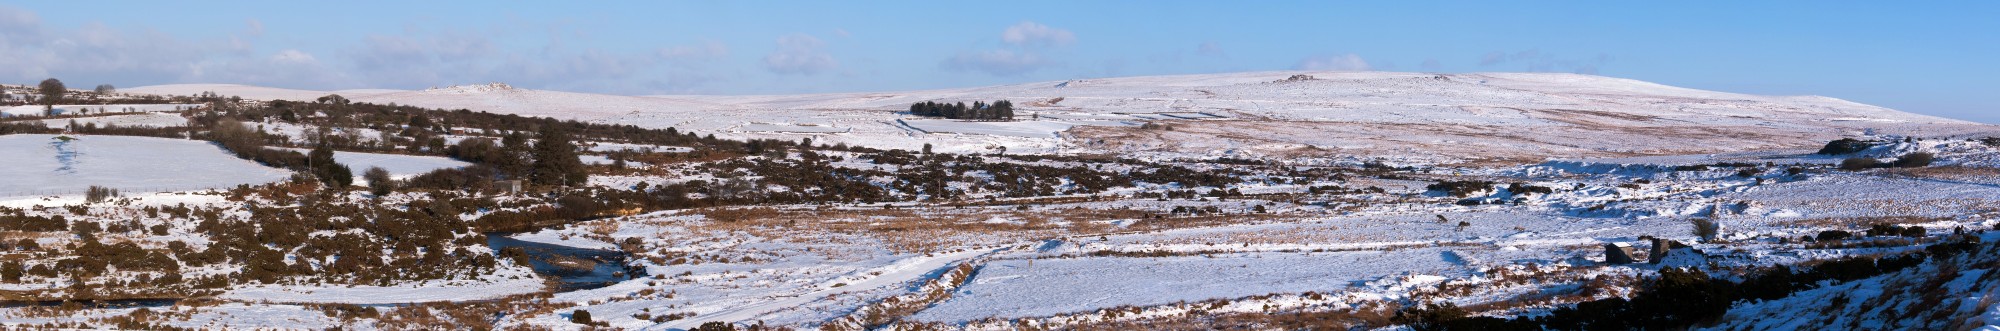 Dartmoor from Cadover in snow